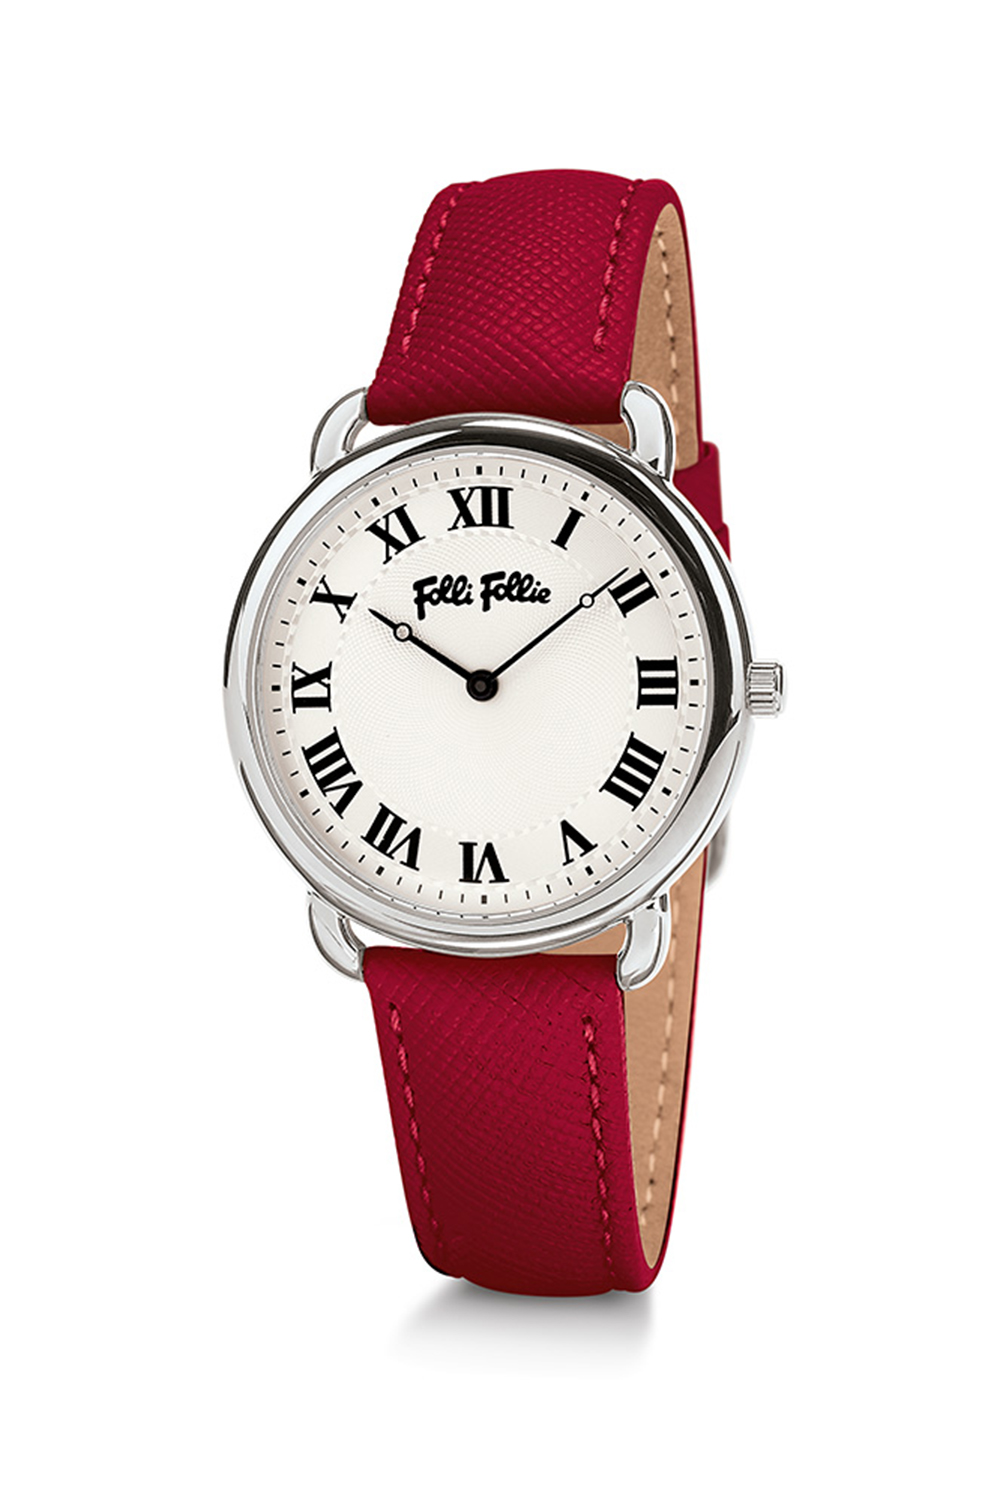 Γυναικεία/Αξεσουάρ/Ρολόγια/Δερμάτινα FOLLI FOLLIE - Γυναικείο ρολόι με δερμάτινο λουράκι FOLLI FOLLIE PERFECT MATCH κόκκινο